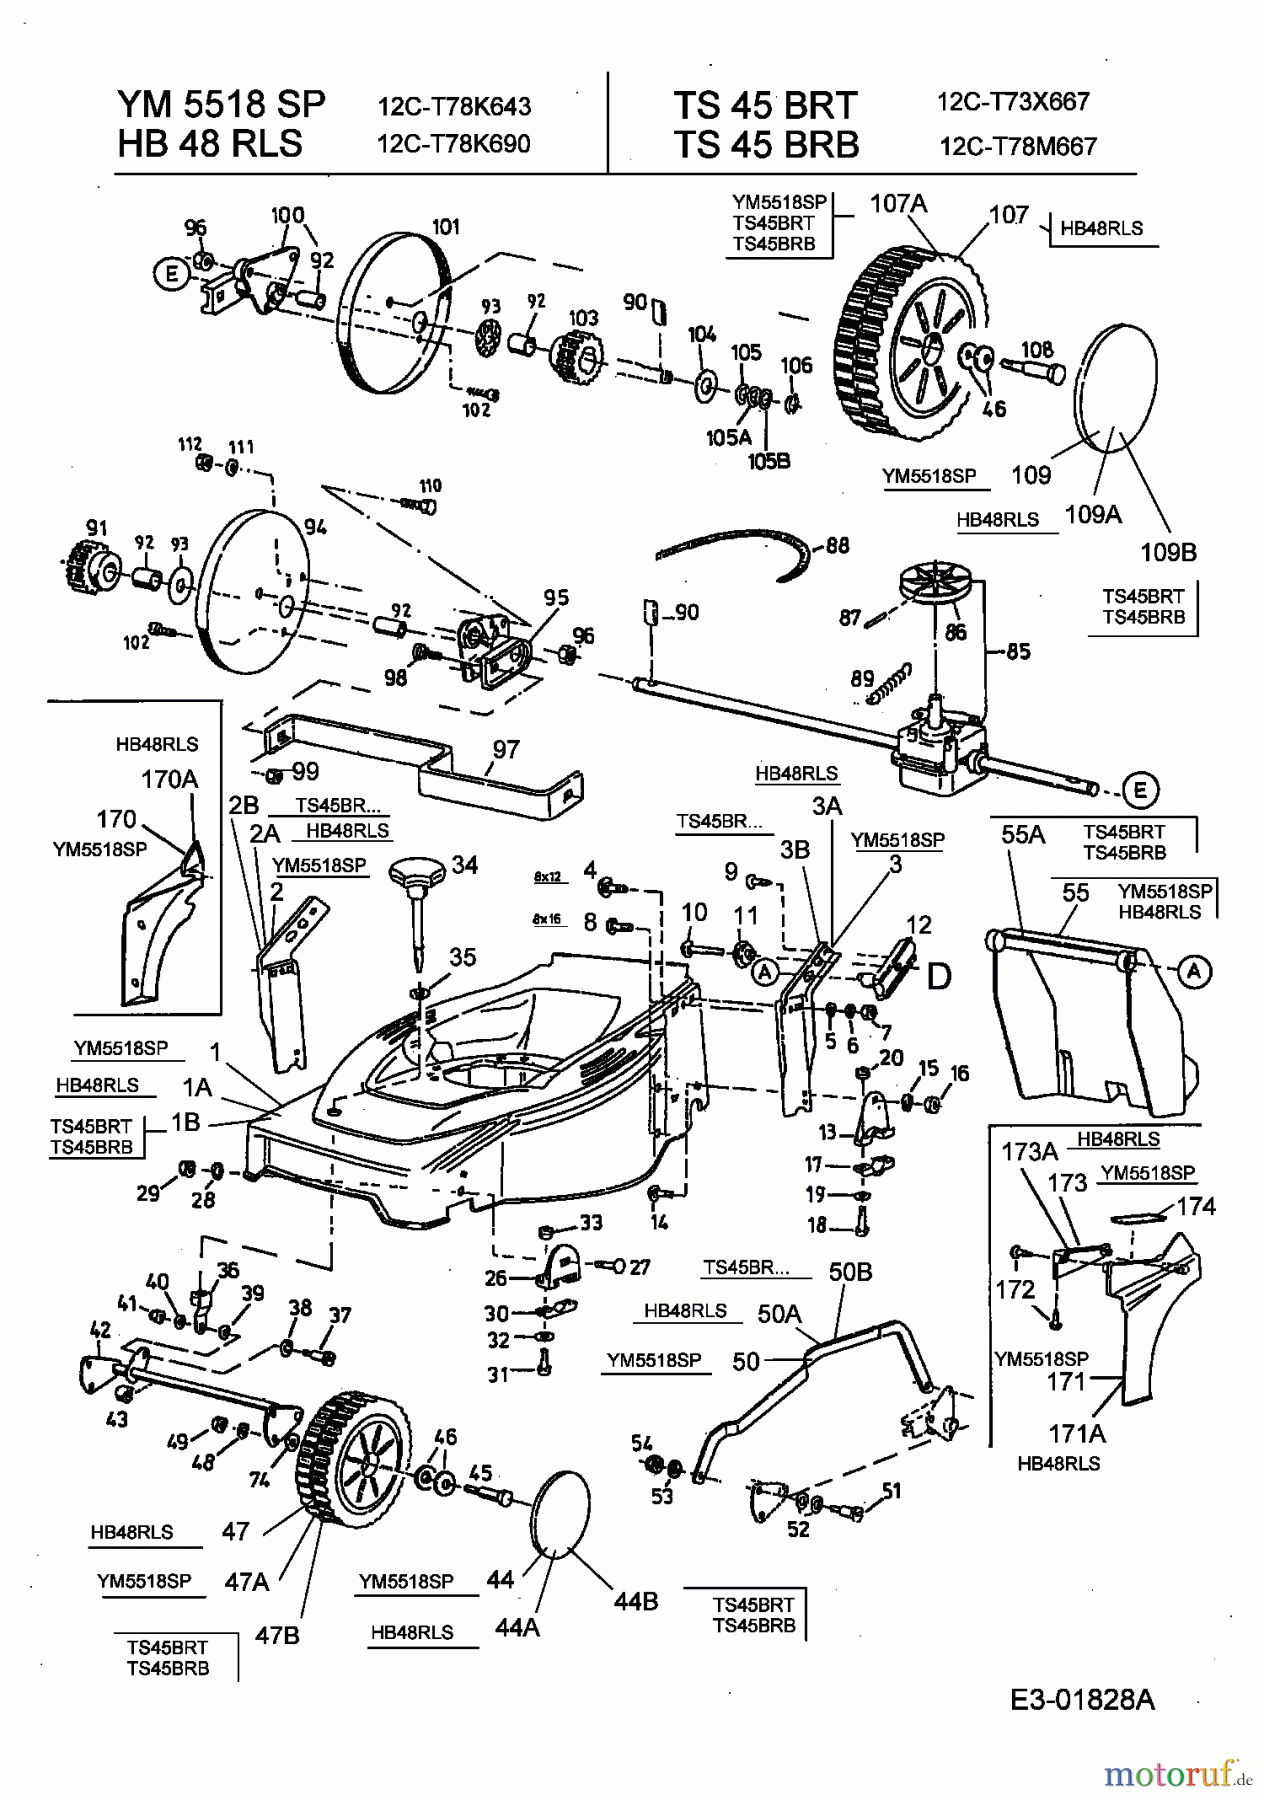  Gutbrod ältere Modelle Motormäher mit Antrieb HB 48 RLS 12C-T78K690  (2003) Getriebe, Räder, Schnitthöhenverstellung